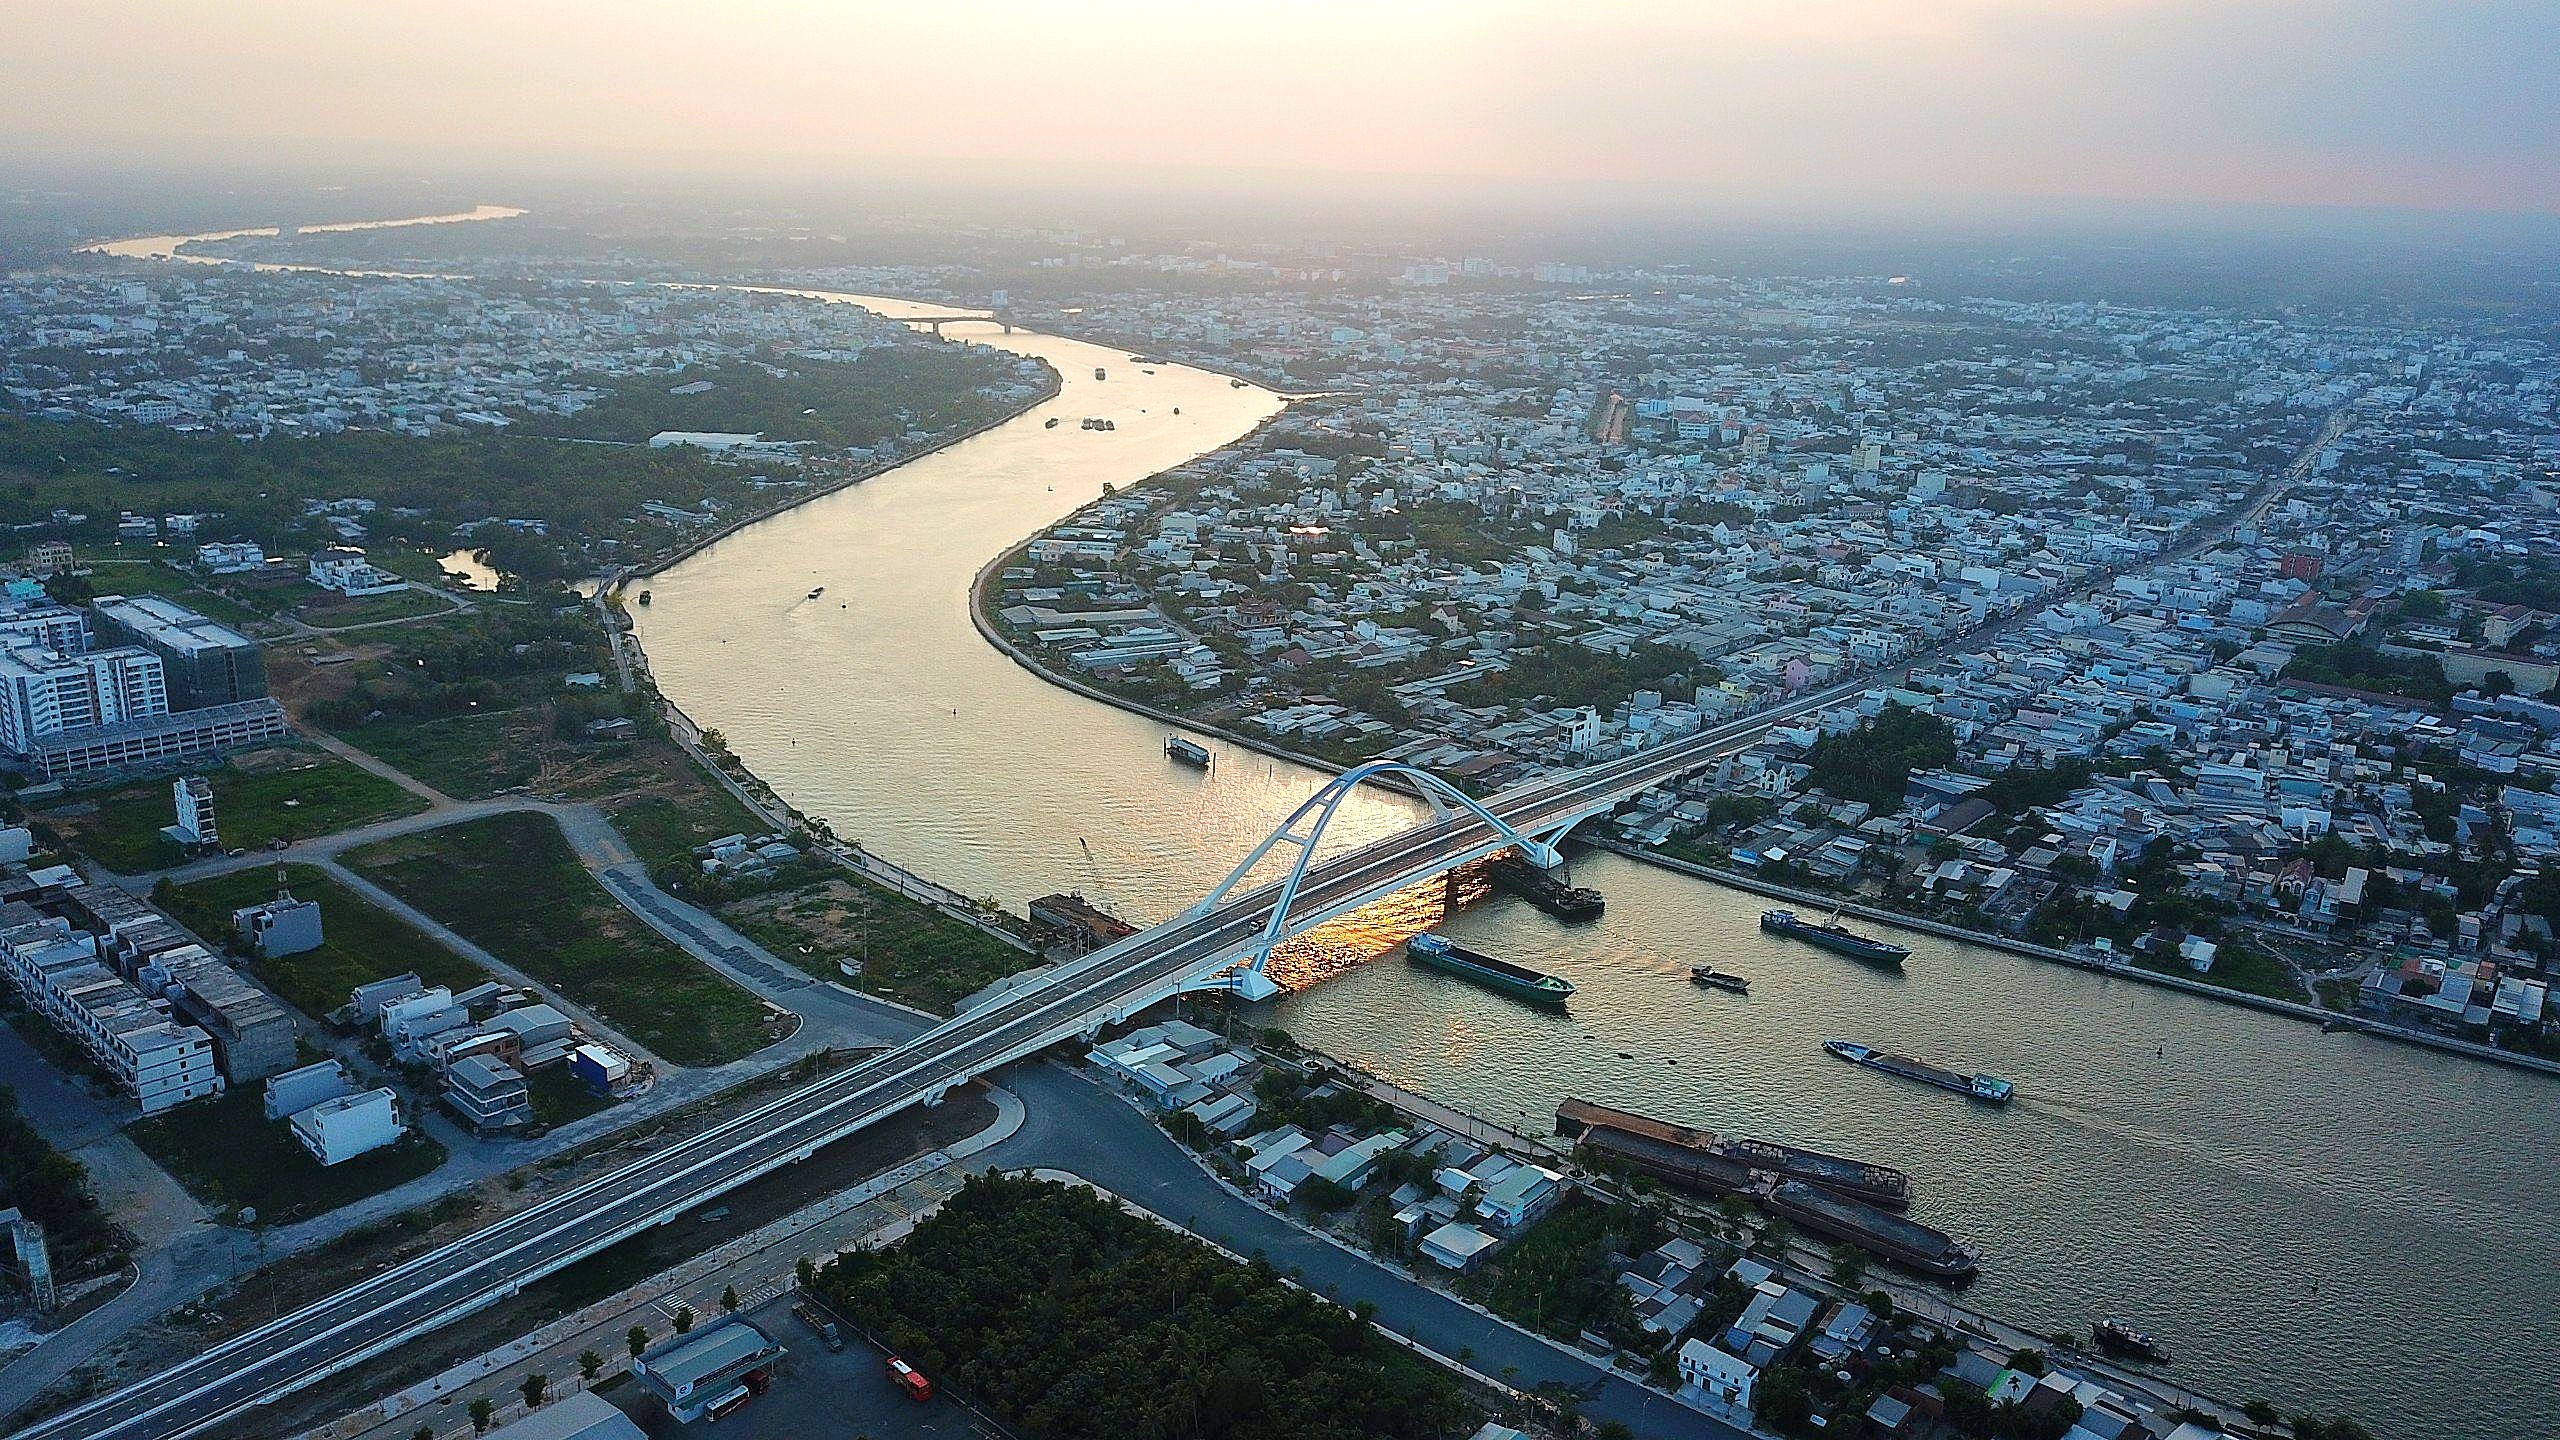 Cầu Trần Hoàng Na bắc qua sông Cần Thơ, nối trung tâm TP (thuộc quận Ninh Kiều) với các khu đô thị phía Nam và tuyến quốc lộ 1A (thuộc quận Cái Răng).